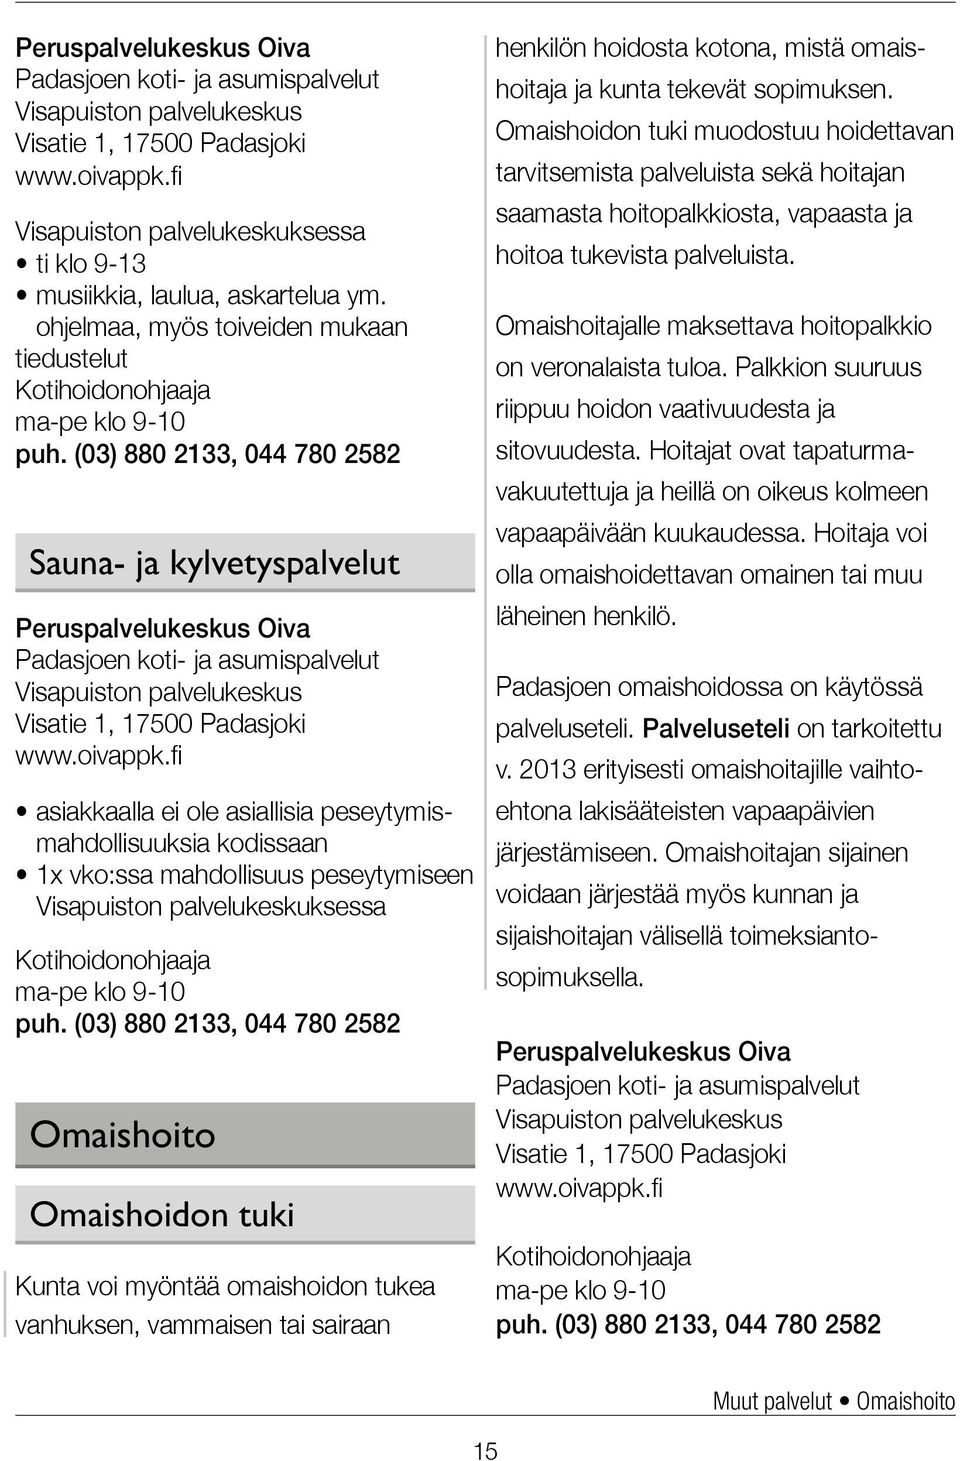 (03) 880 2133, 044 780 2582 Sauna- ja kylvetyspalvelut Padasjoen koti- ja asumispalvelut Visapuiston palvelukeskus Visatie 1, 17500 Padasjoki www.oivappk.